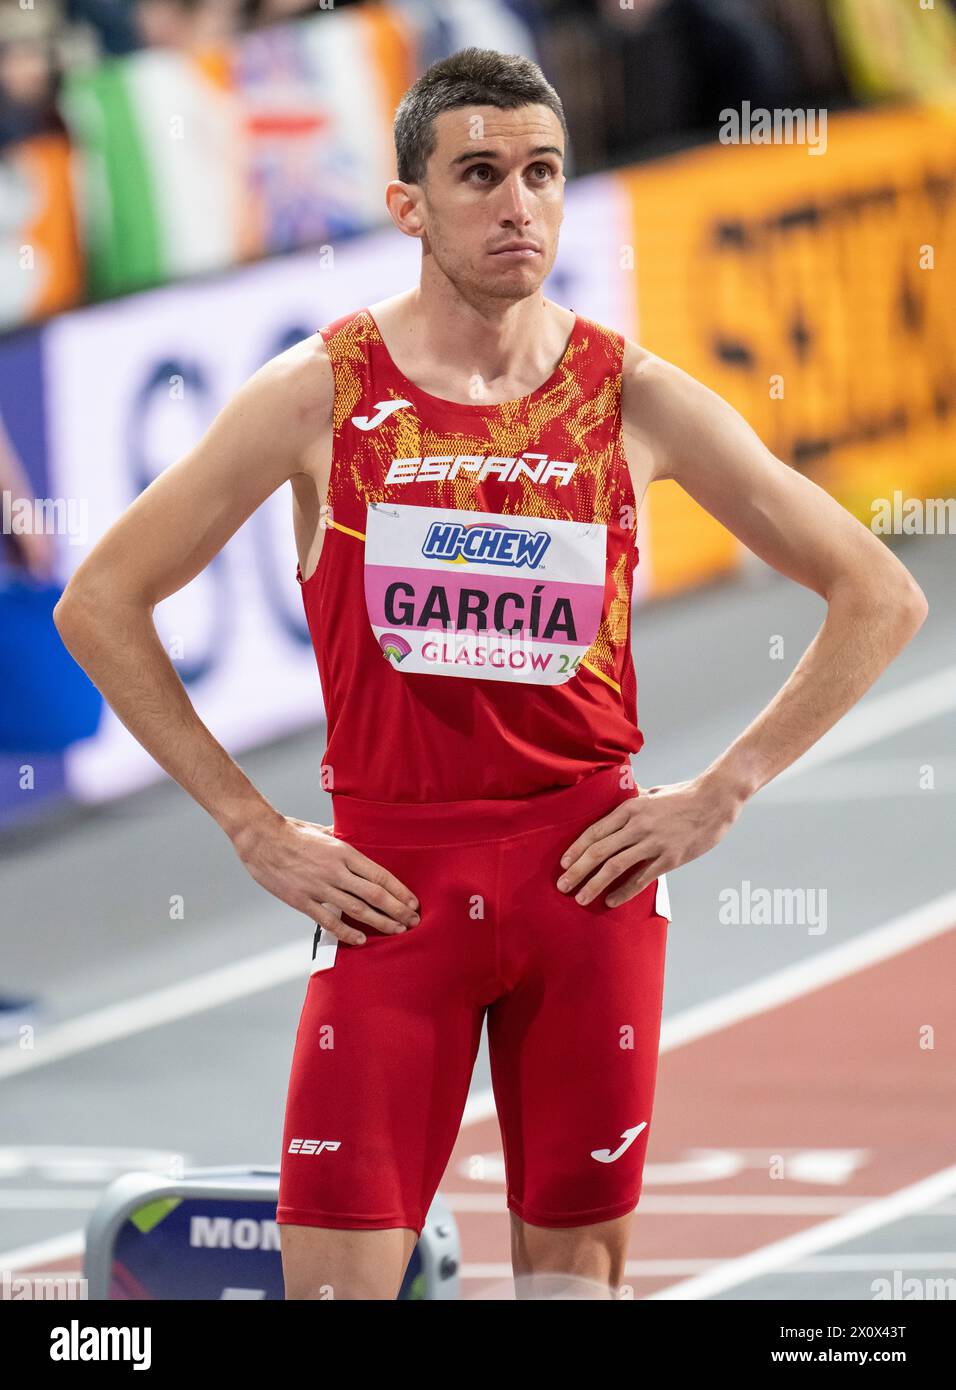 La spagnola Mariano Garcia gareggia nella semifinale di 800 m il giorno 2 ai Campionati del mondo di atletica leggera indoor, Emirates Arena, Glasgow, Scozia, Regno Unito. 1 Foto Stock